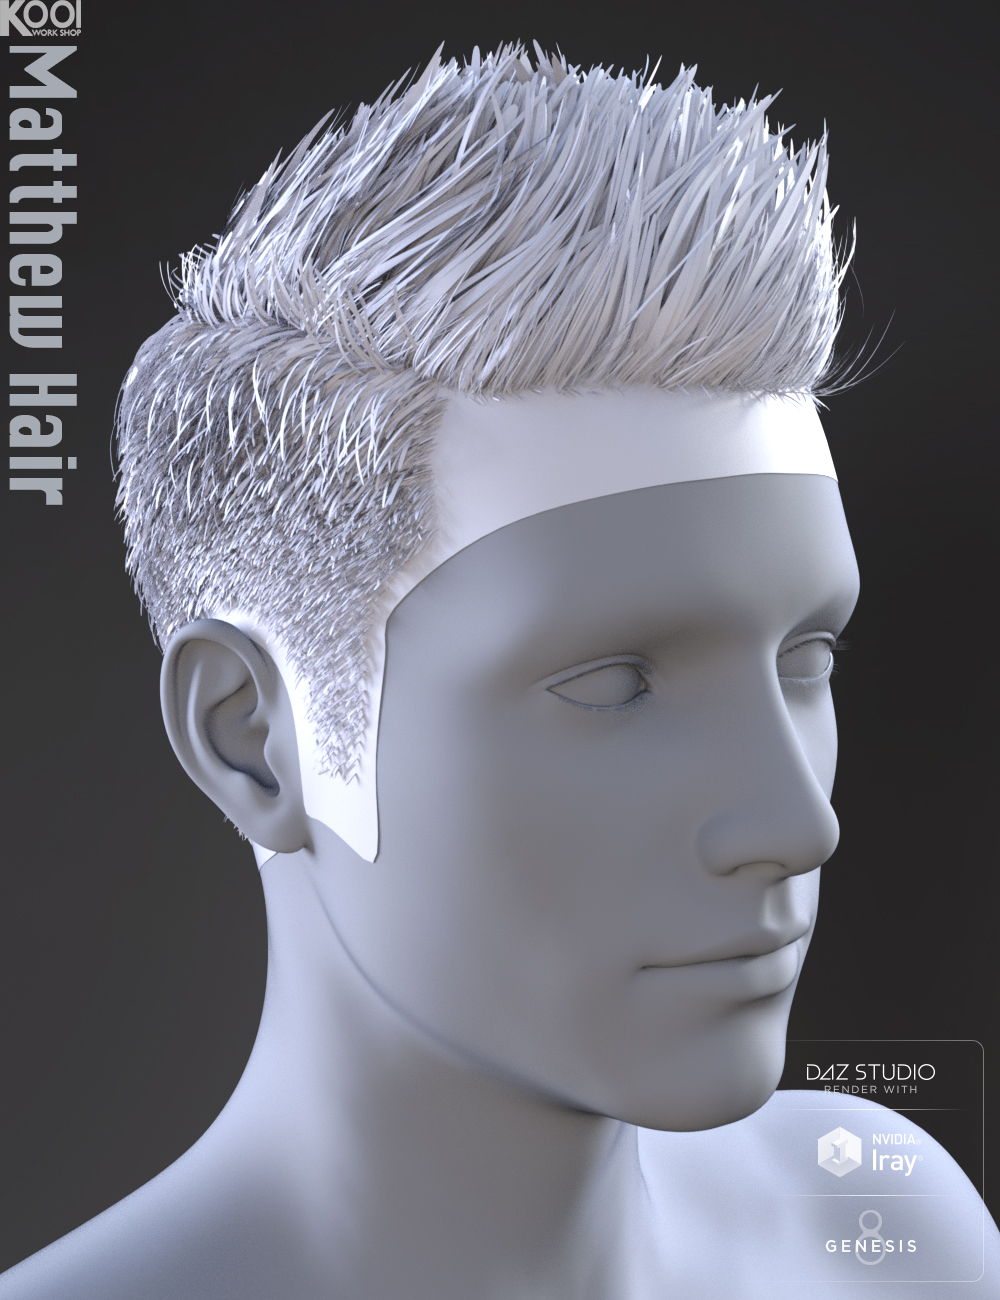 Matthew Hair for Genesis 8 Male by: Kool, 3D Models by Daz 3D